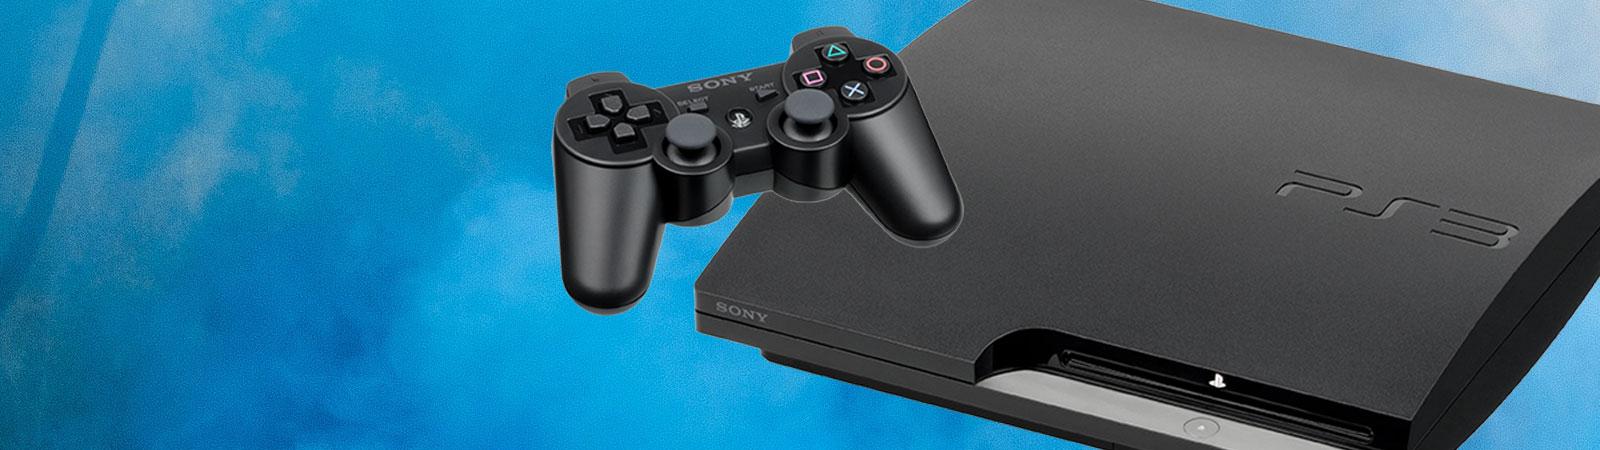 dinsdag Kracht verwarring PS3 consoles, PlayStation 3 games & accessoires kopen bij GooHoo!